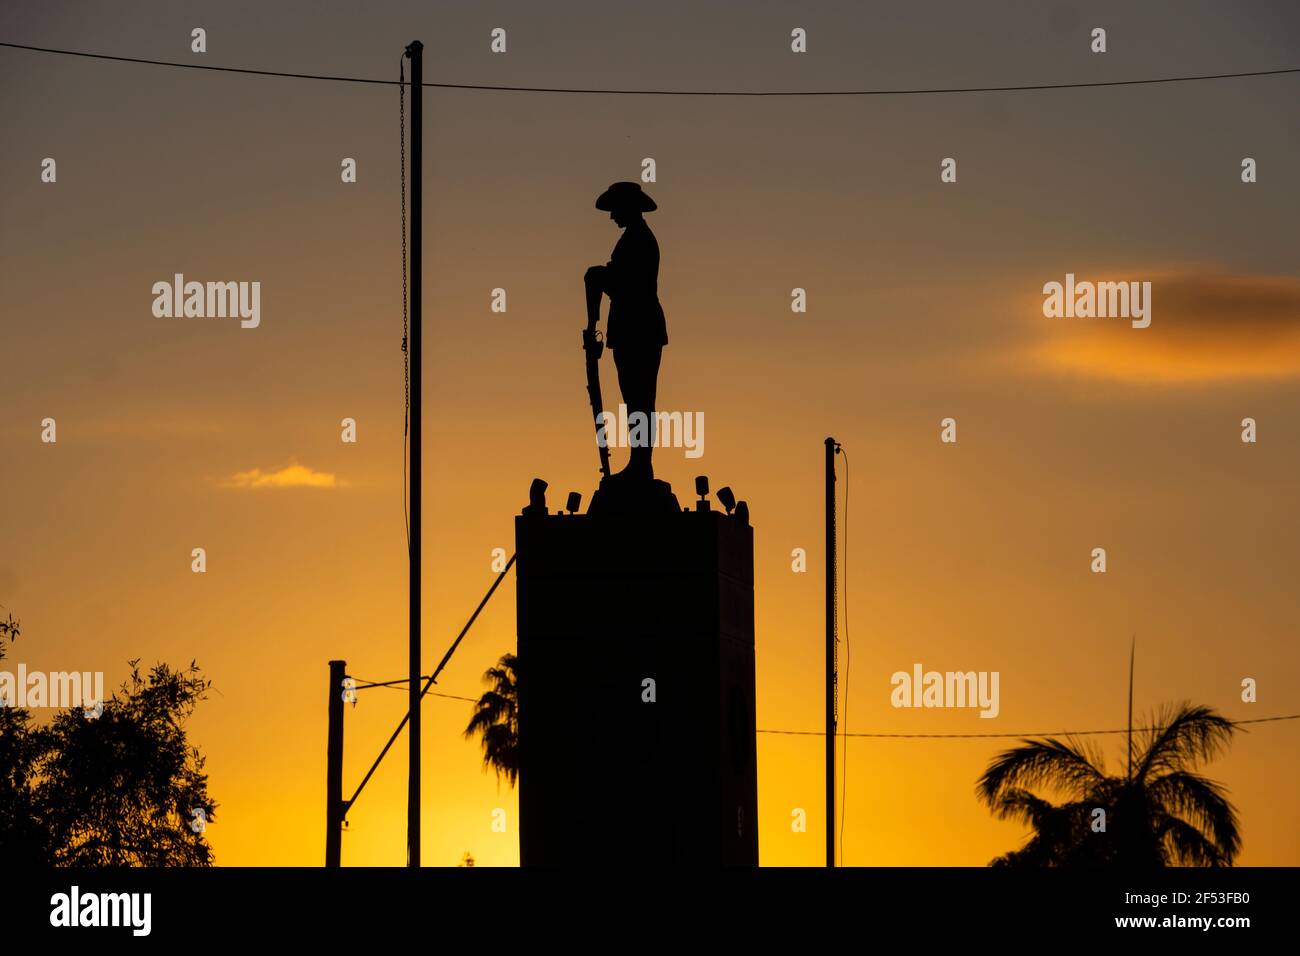 Mémorial de guerre avec un soldat et une carabine inversée à Charters Towers, Queensland, Australie, silhoueté contre un lever de soleil doré. Banque D'Images